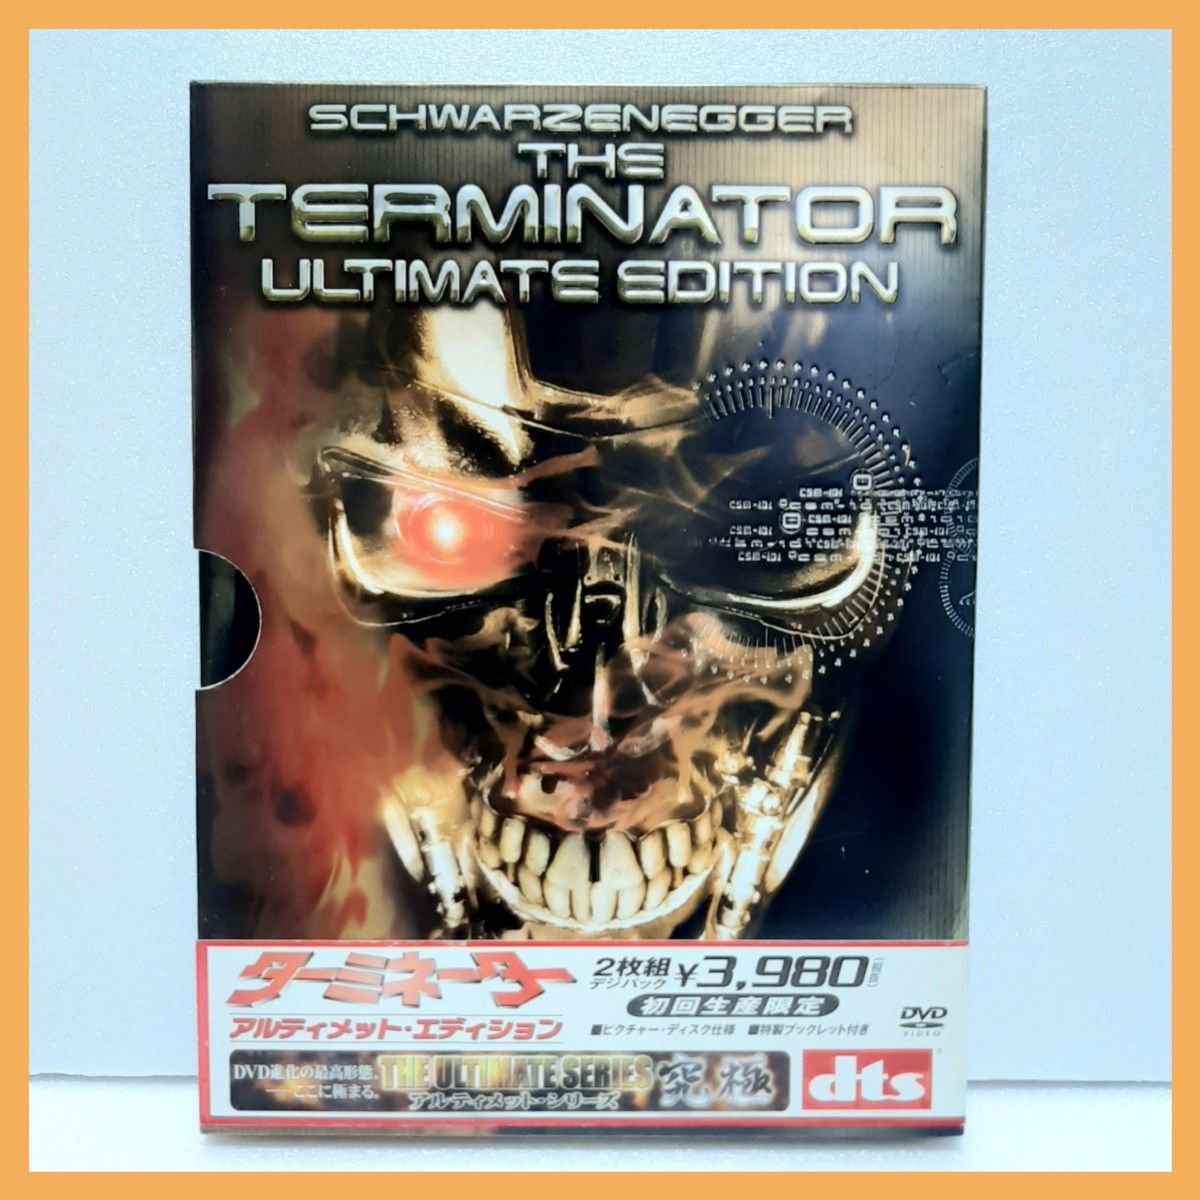 ターミネーター アルティメット・エディション('84米)〈初回・2枚組〉DVD